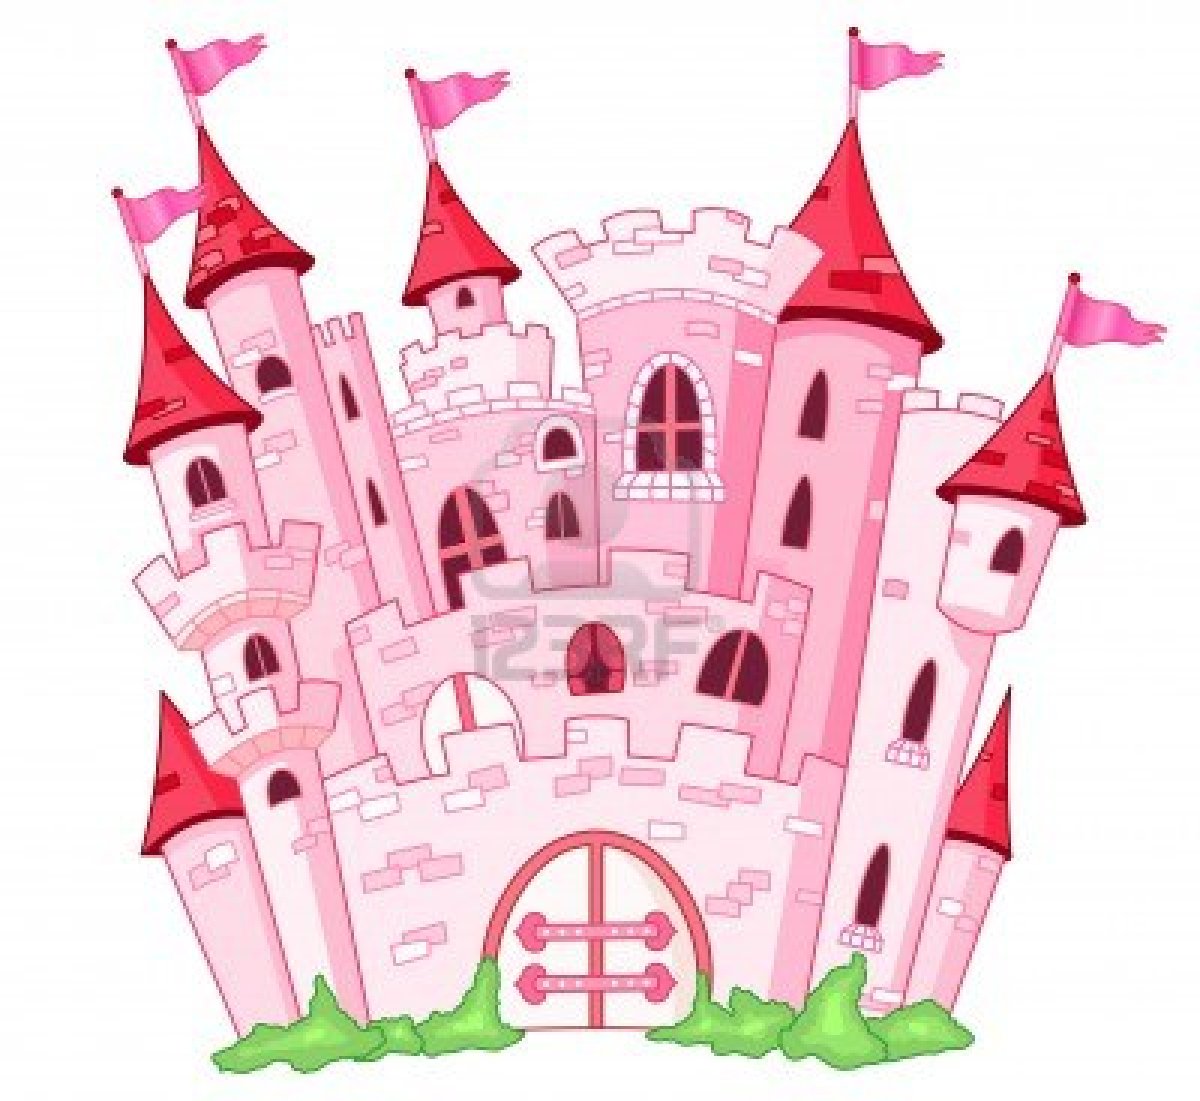 Pink castle clipart - ClipartFox